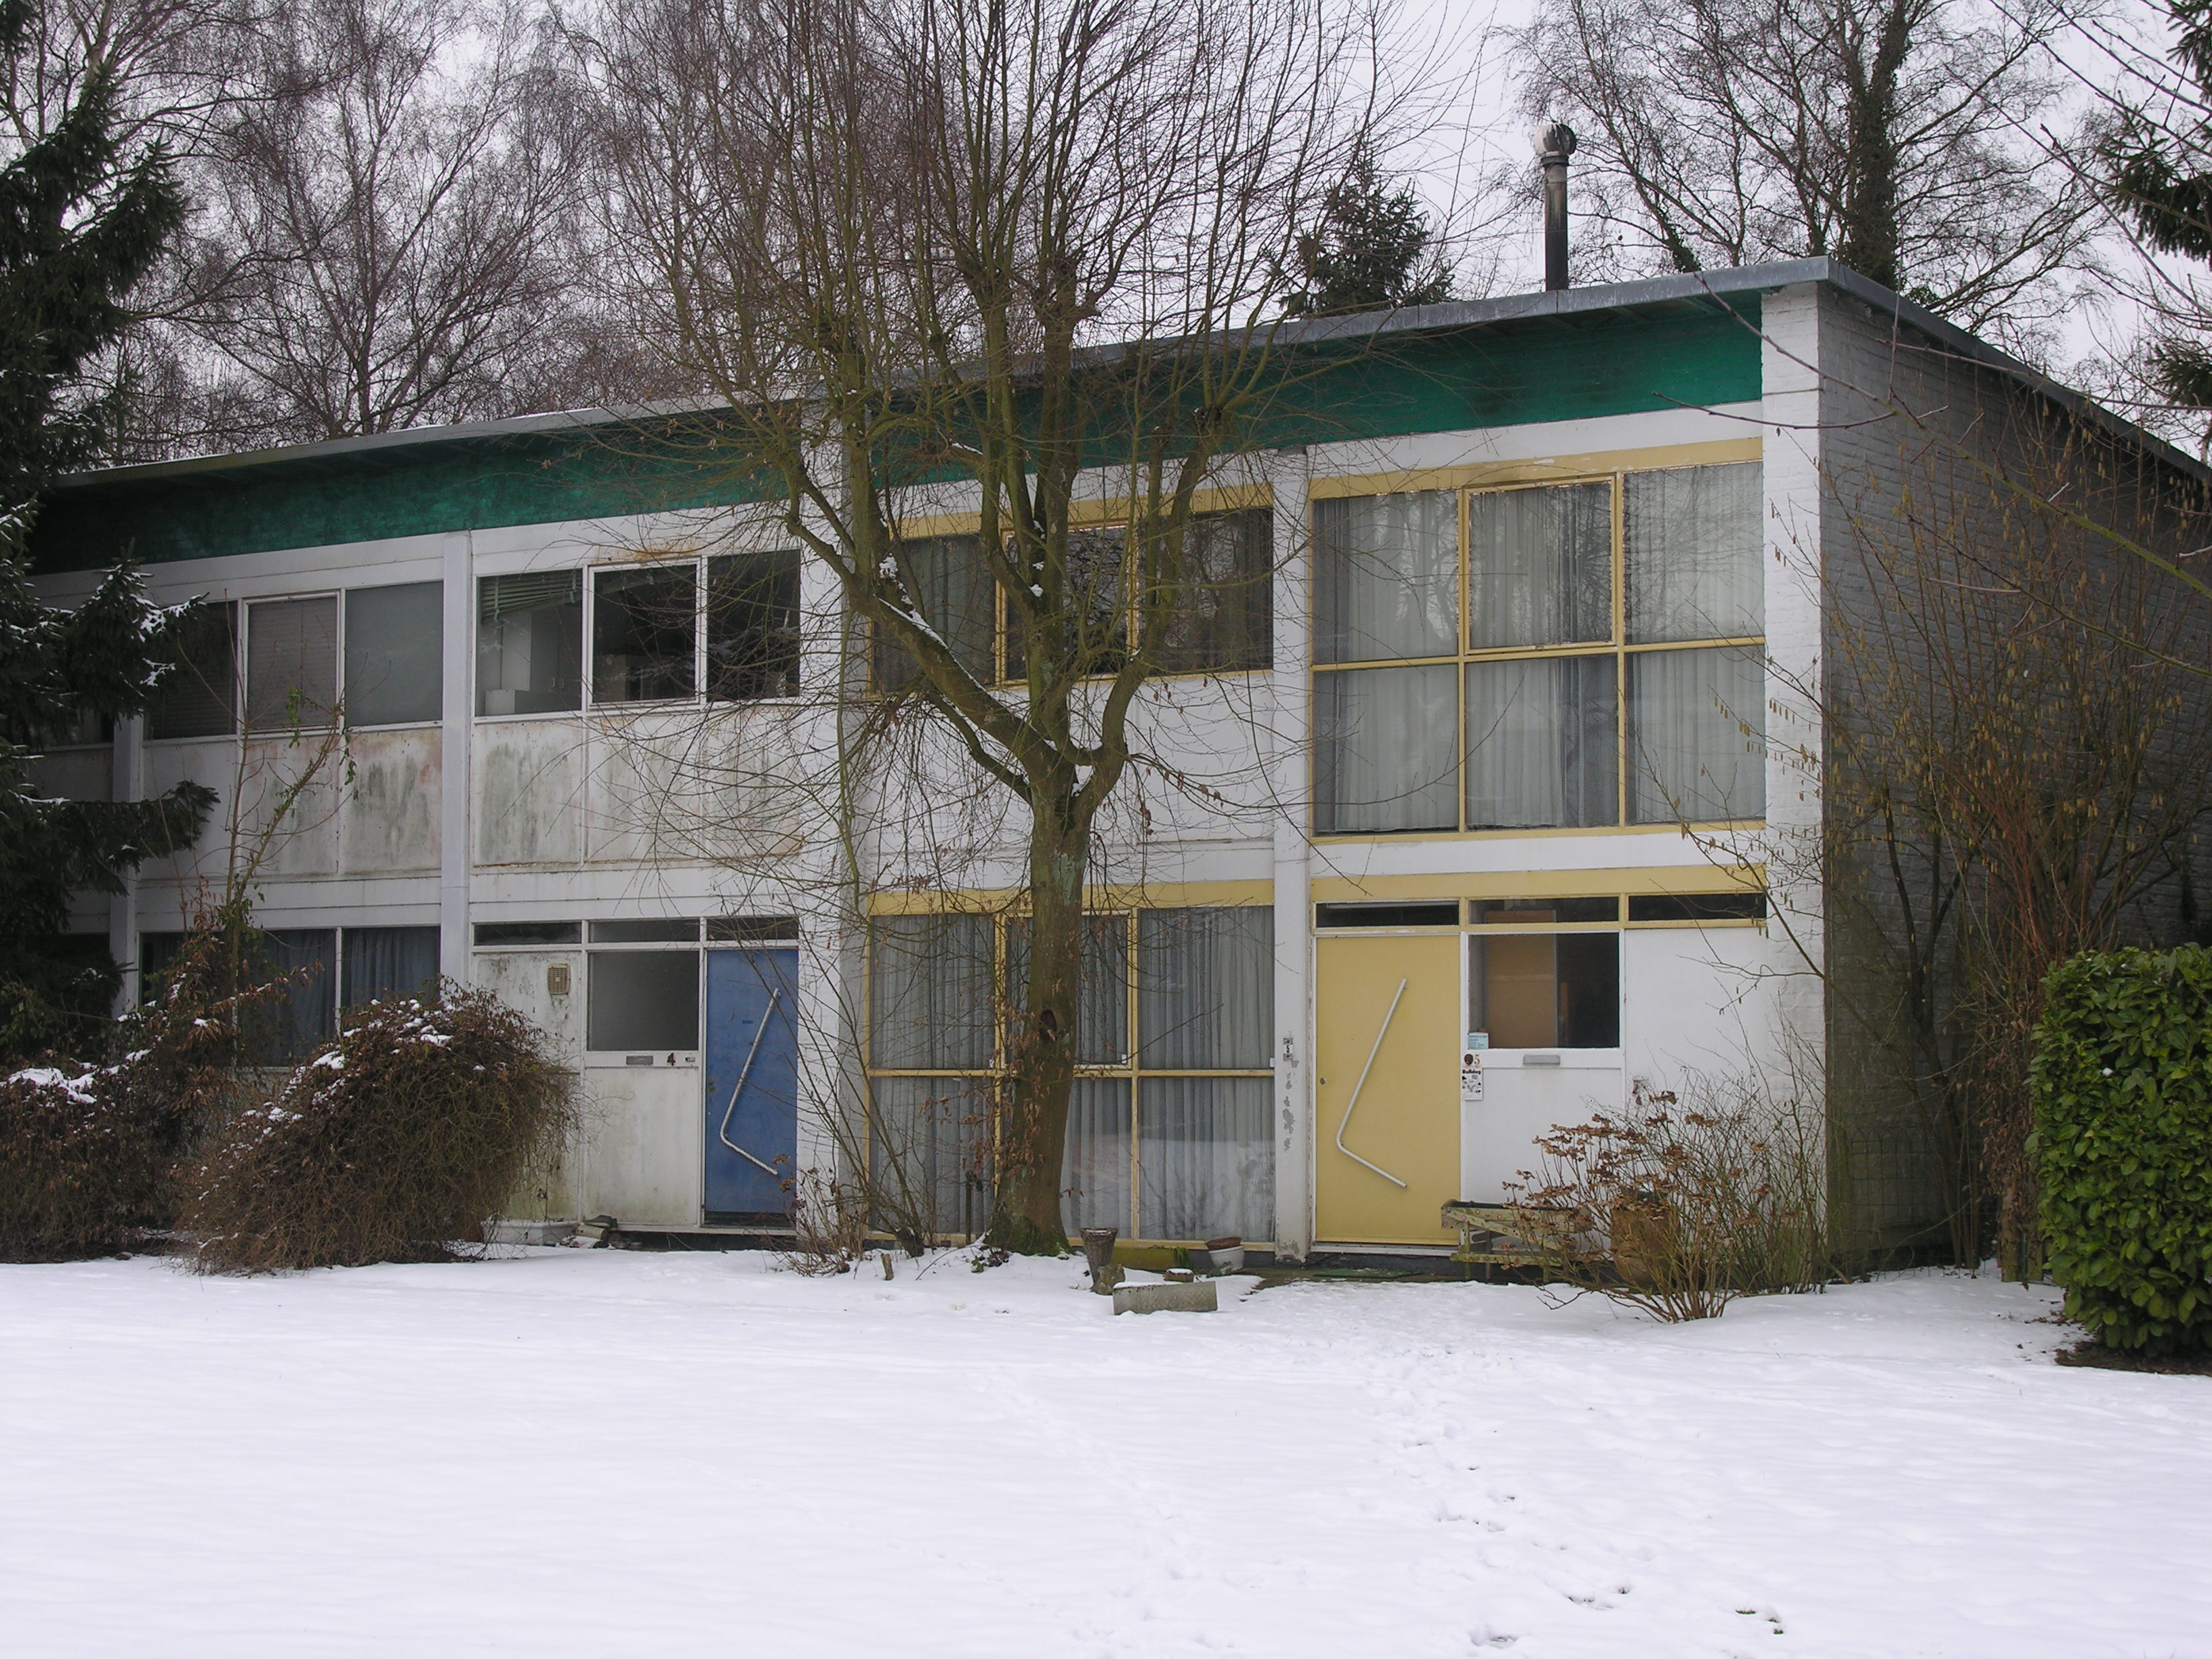 Vierwindenbinnenhof, sociale woningbouw anno 1955